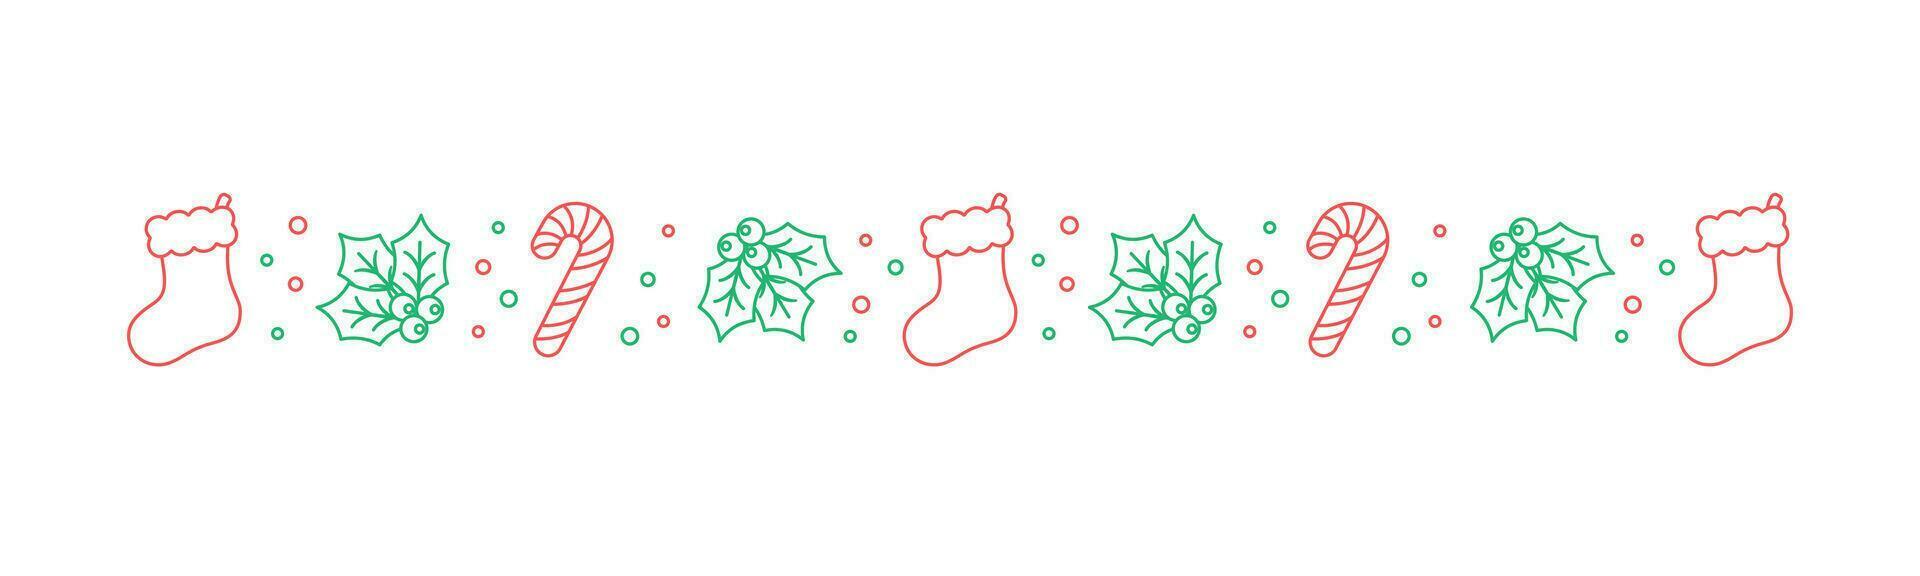 Natale a tema decorativo confine e testo divisore, Natale calza, caramella canna e vischio modello scarabocchio. vettore illustrazione.